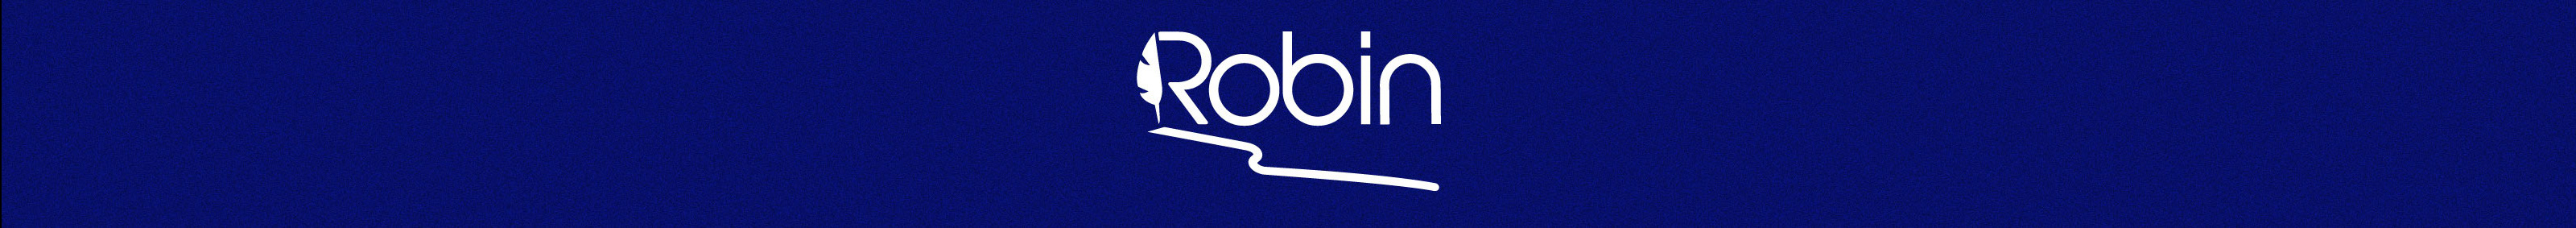 Robin Lindo's profile banner